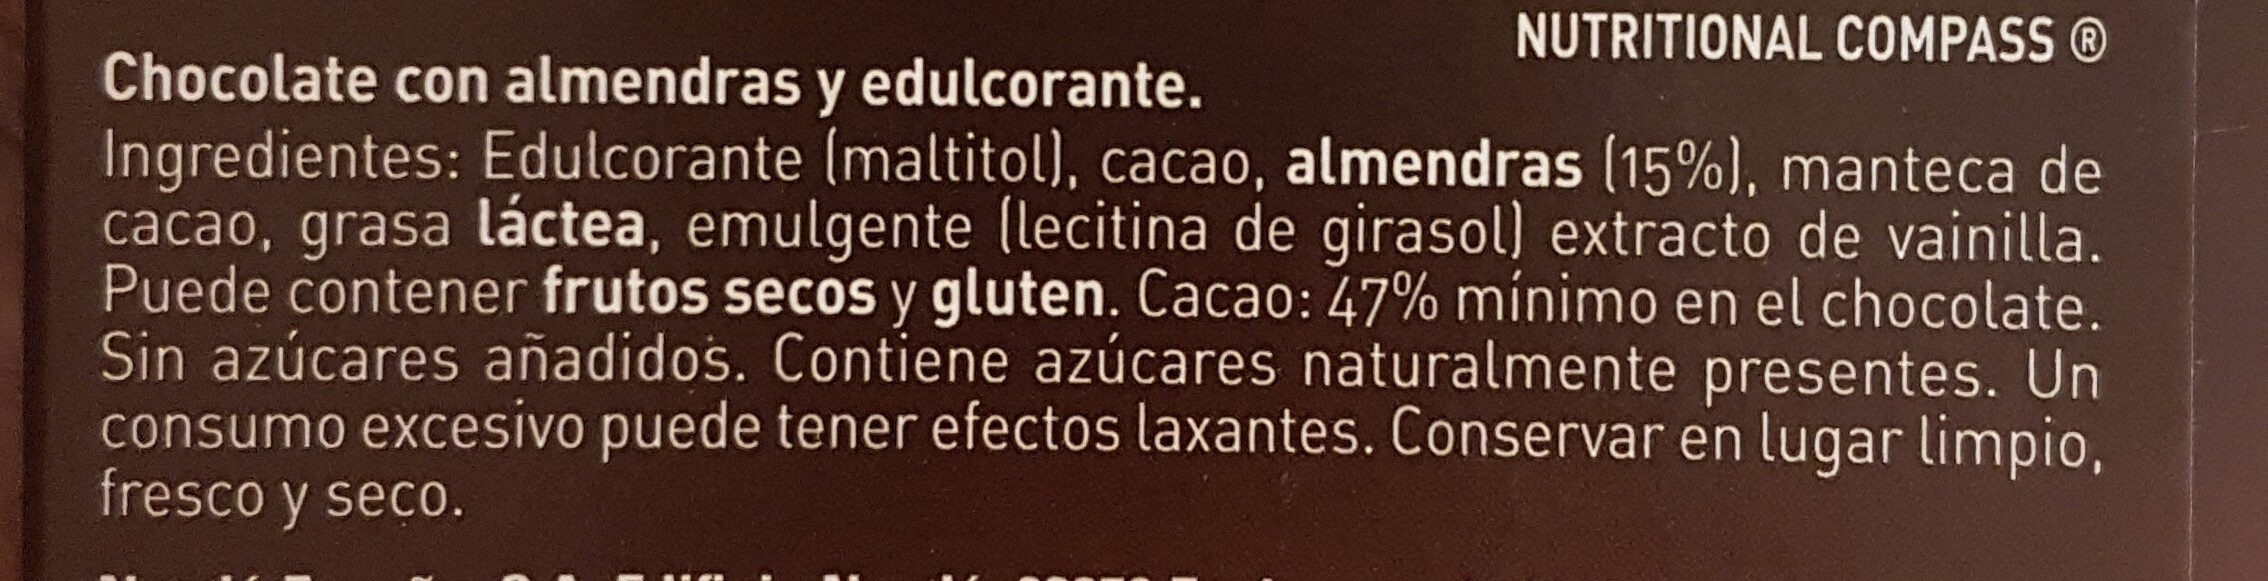 Chocolate negro sin azúcares almendras - Ingredients - es